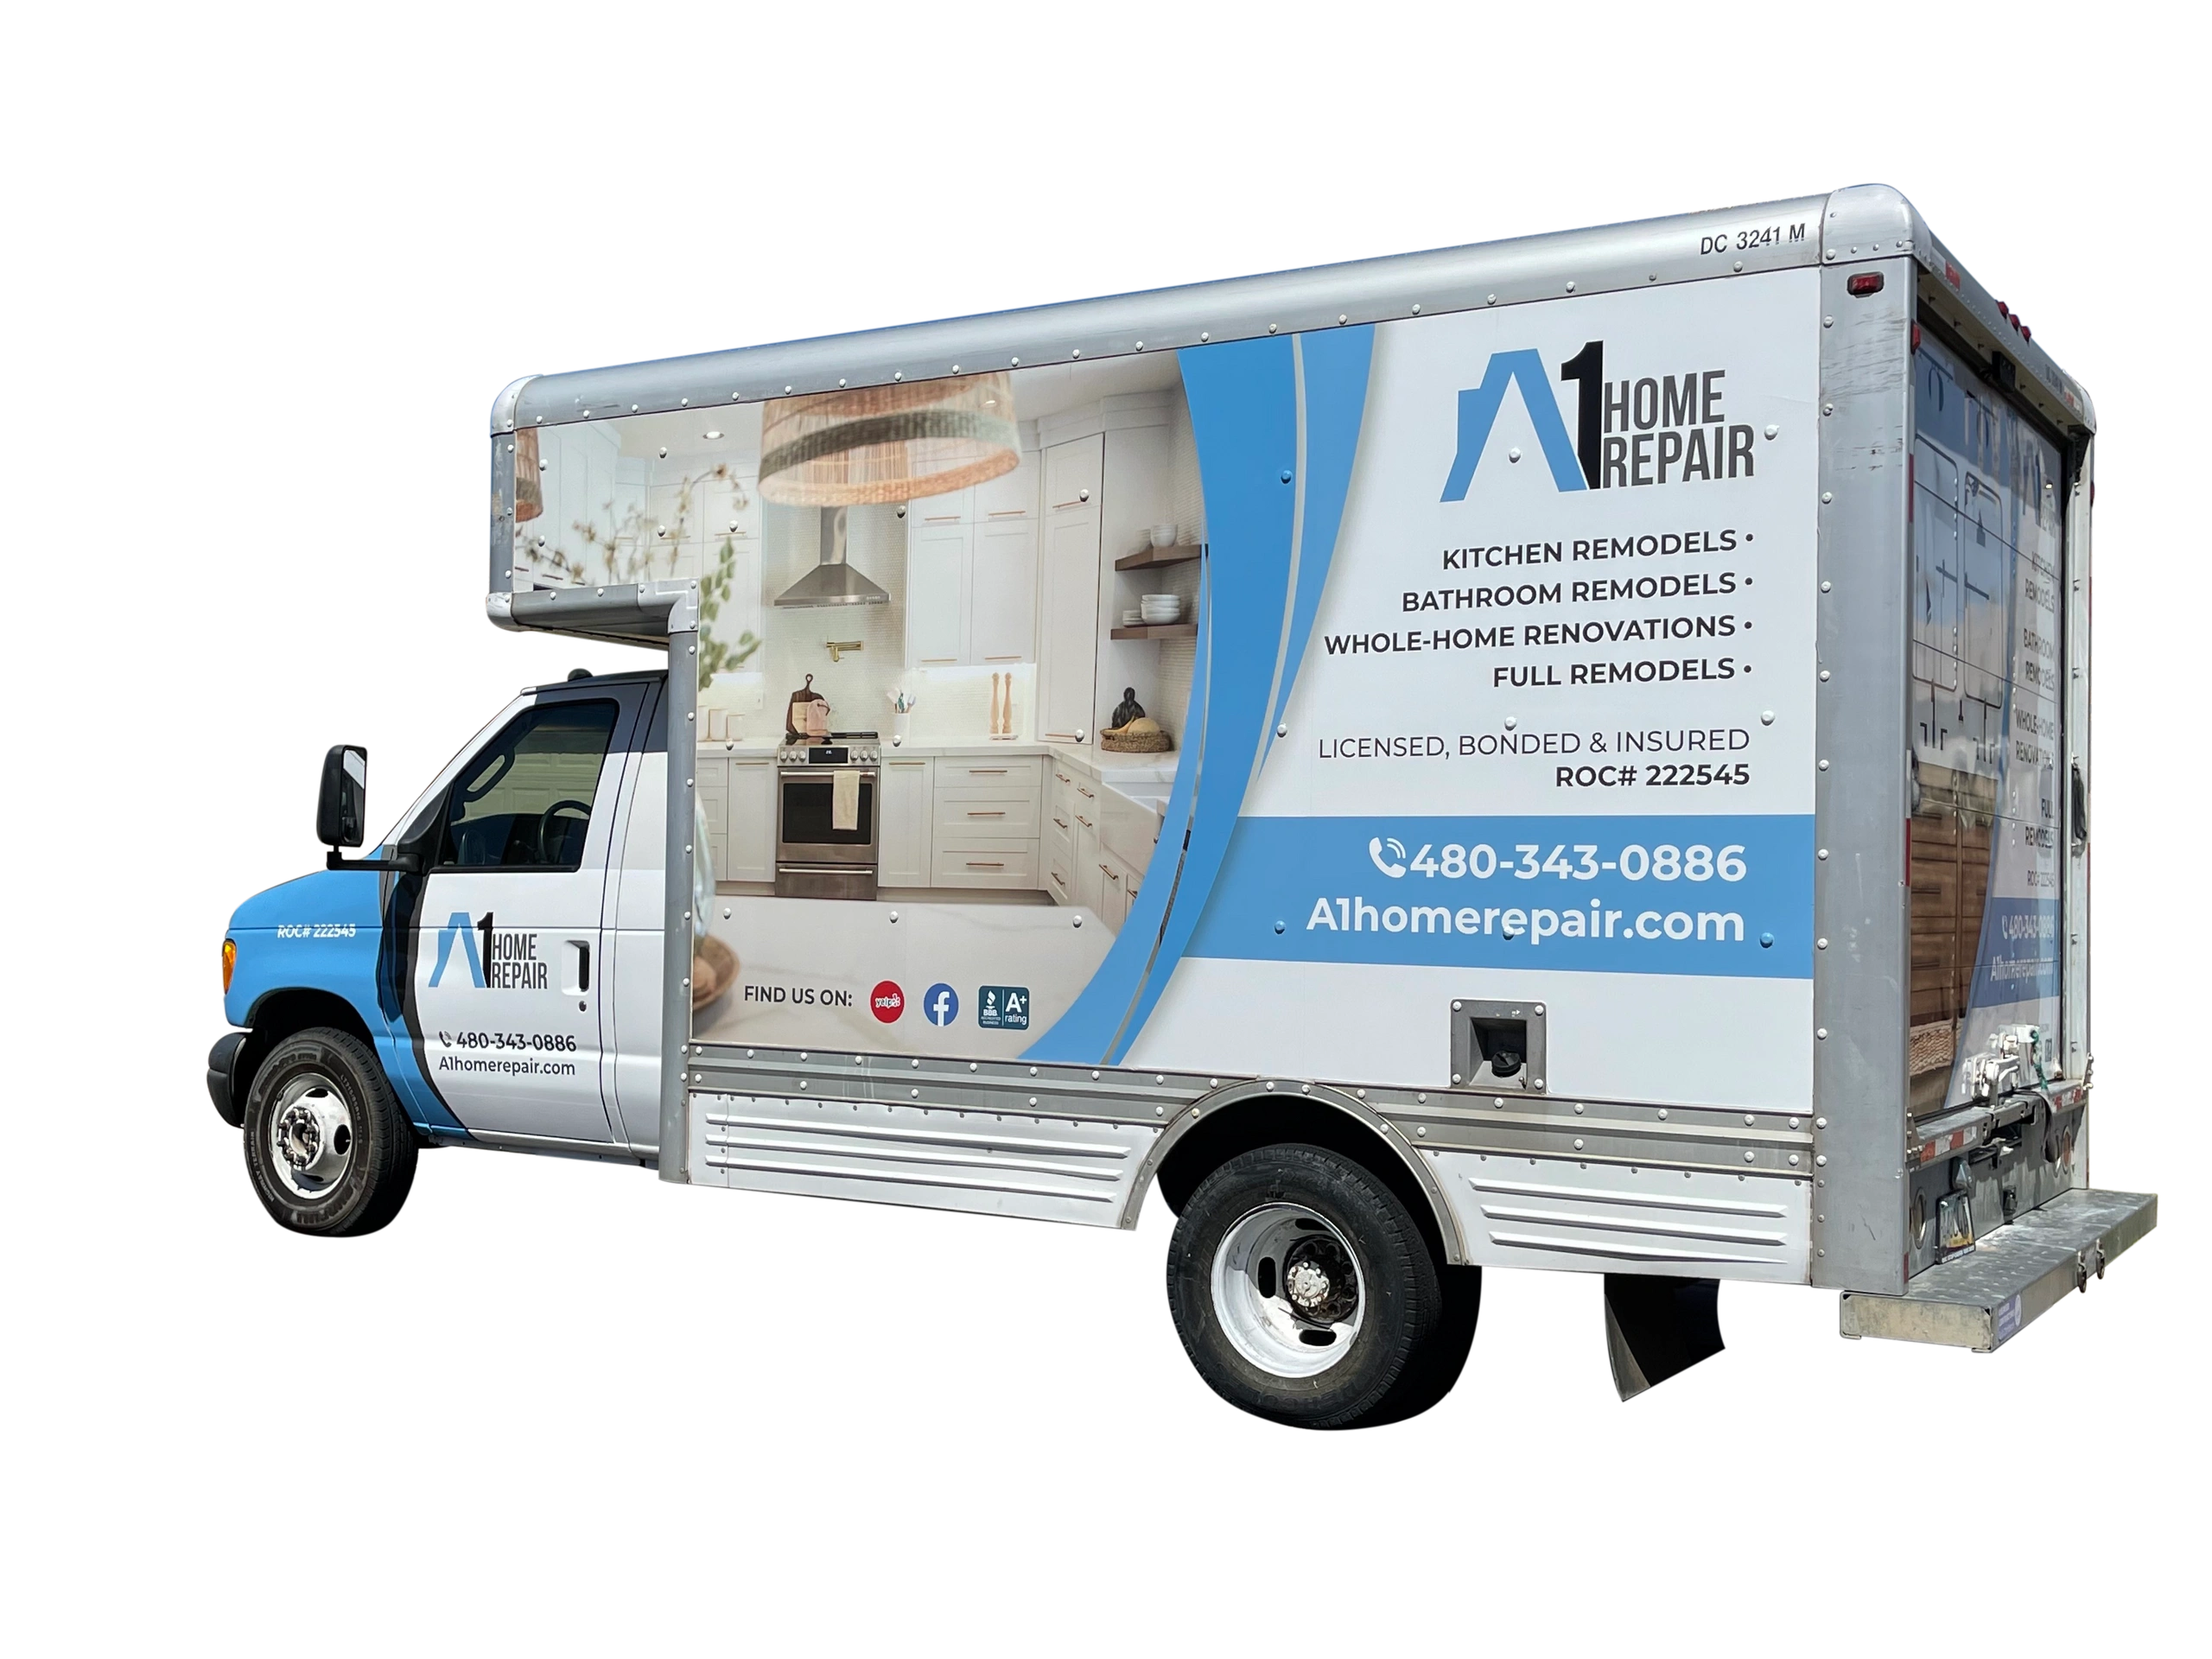 a1 home repair van with logo bathroom remodeling